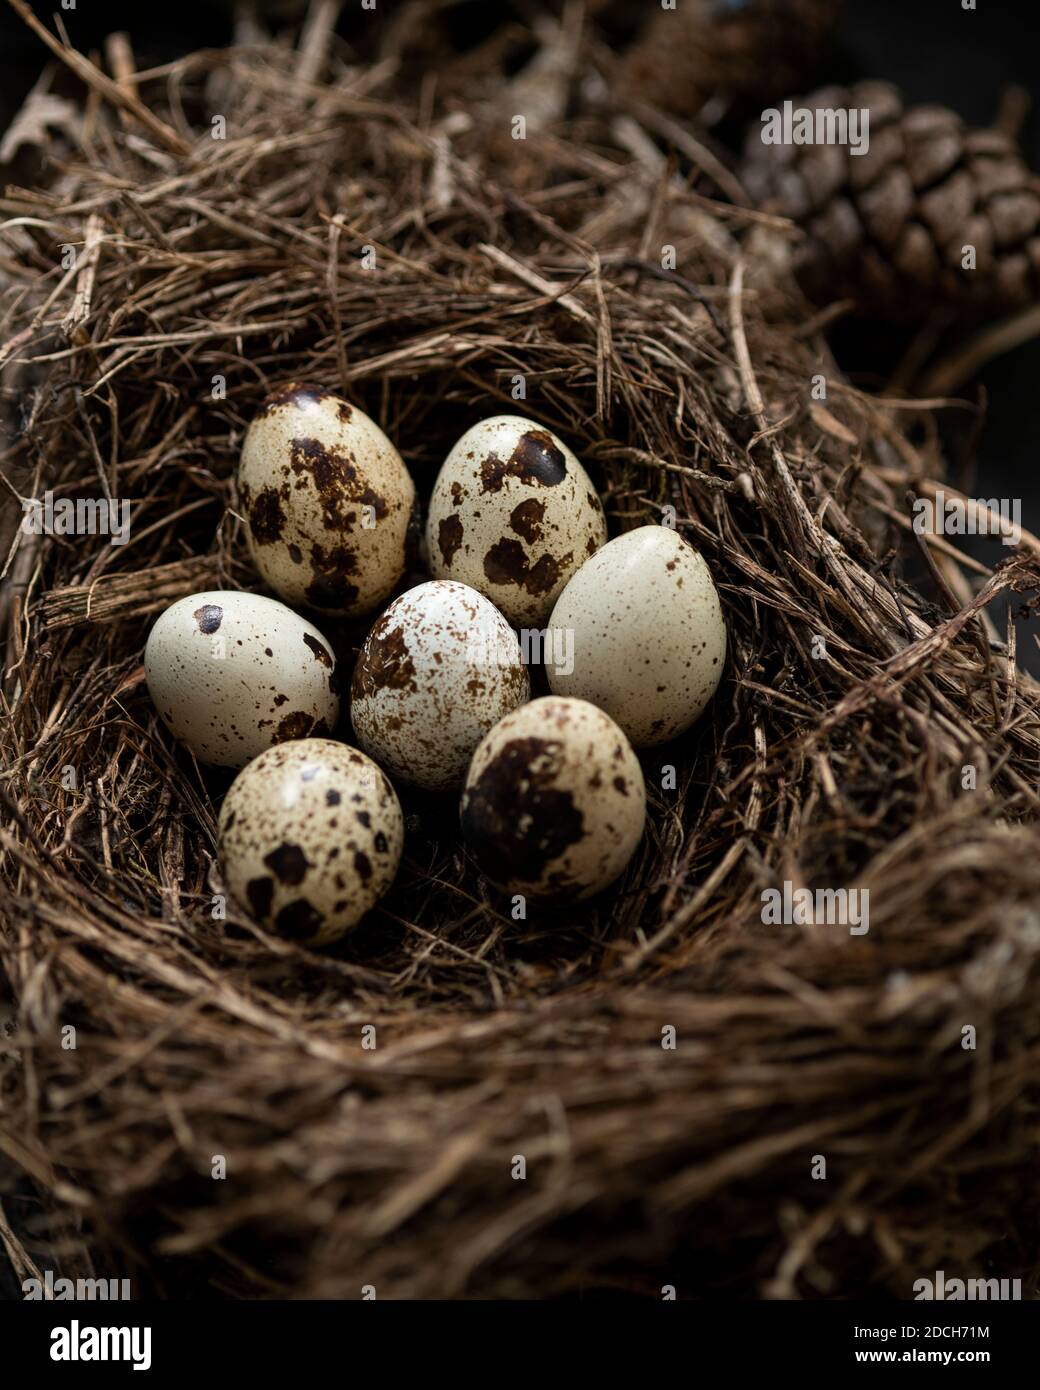 Eier von einer Wachtel in einer schale,rohe wachtel eier,colour food photograph of quail eggs in a bowl,Quails Egg,schale mit Wachtel eiern,ingredient Stock Photo